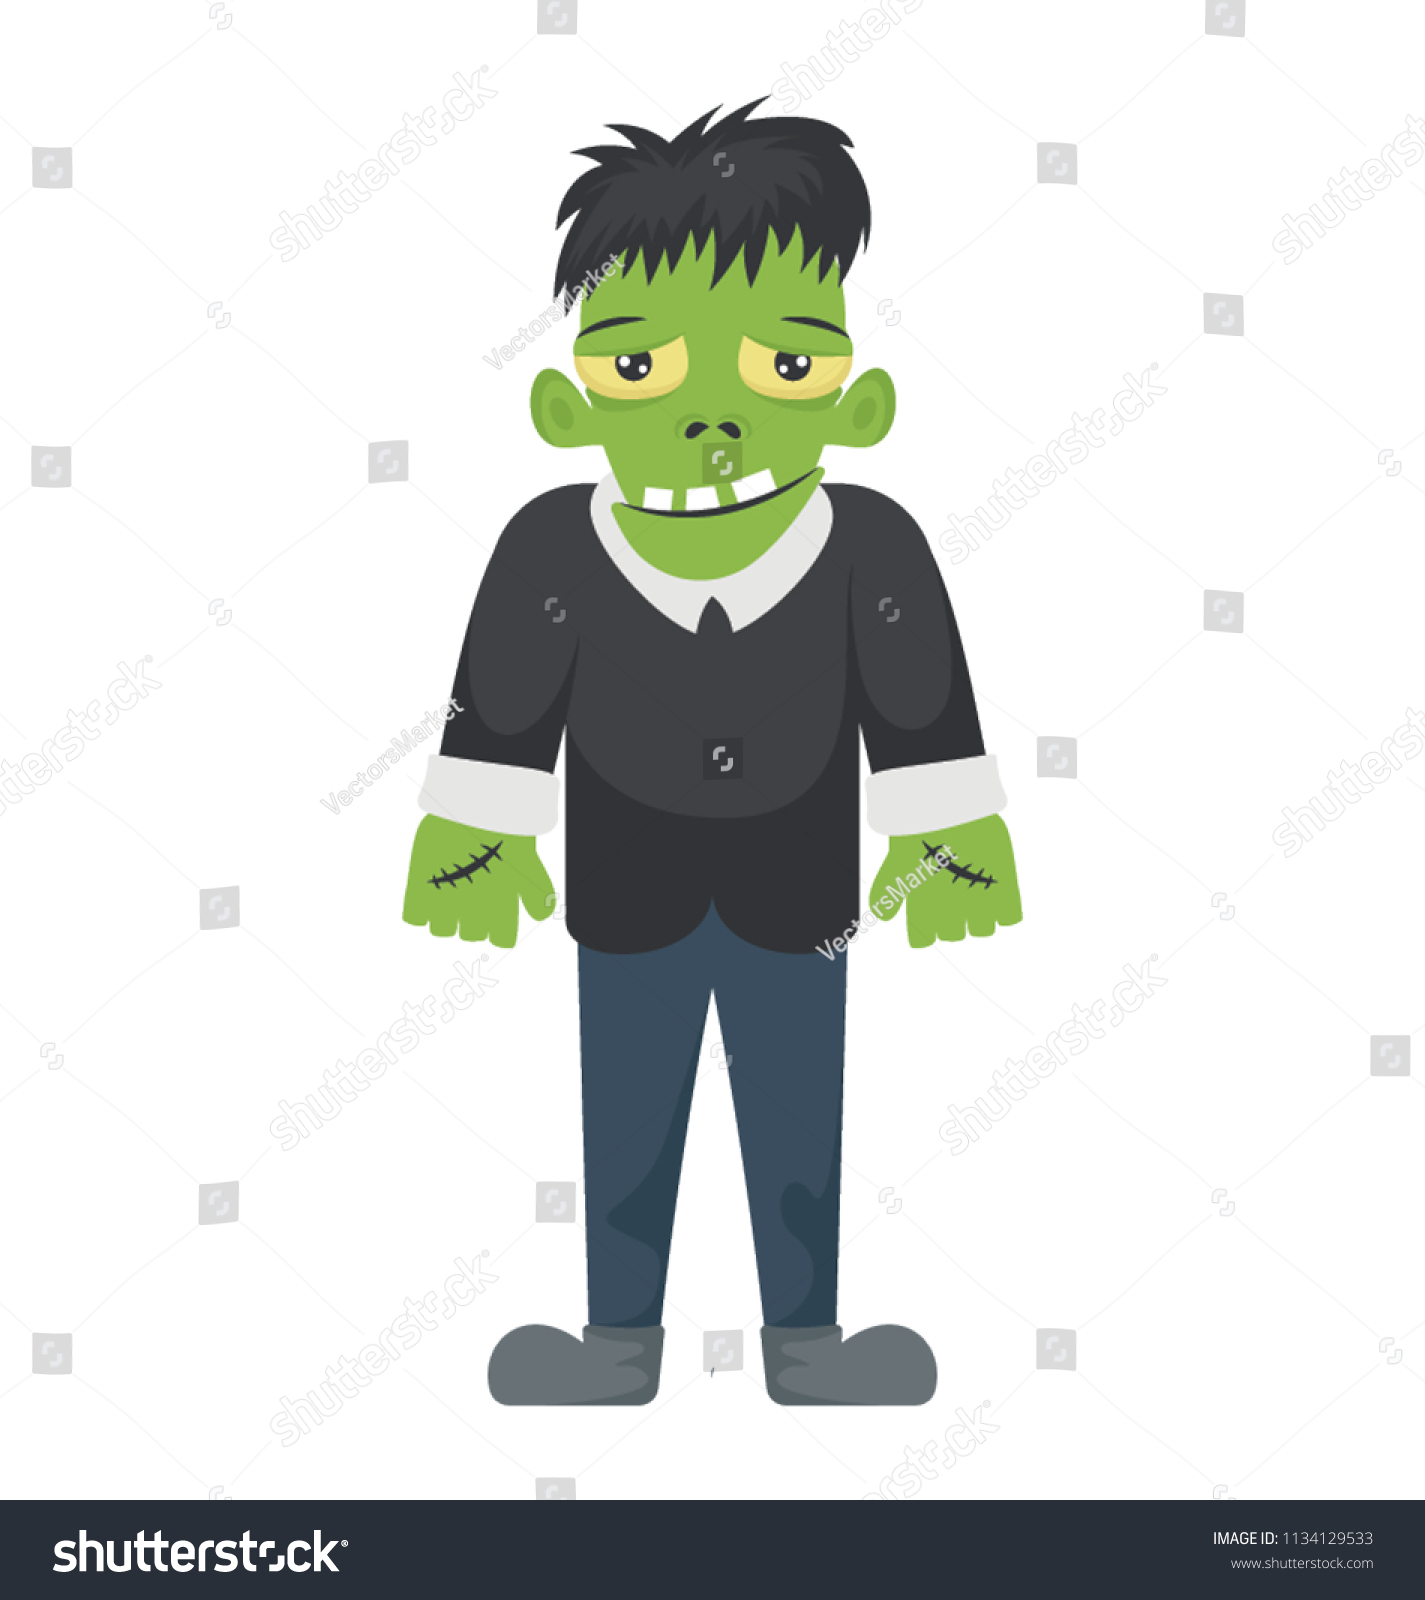 SVG of 
Famous cartoon character shrek in monster avatar making icon for monster shrek 
 svg